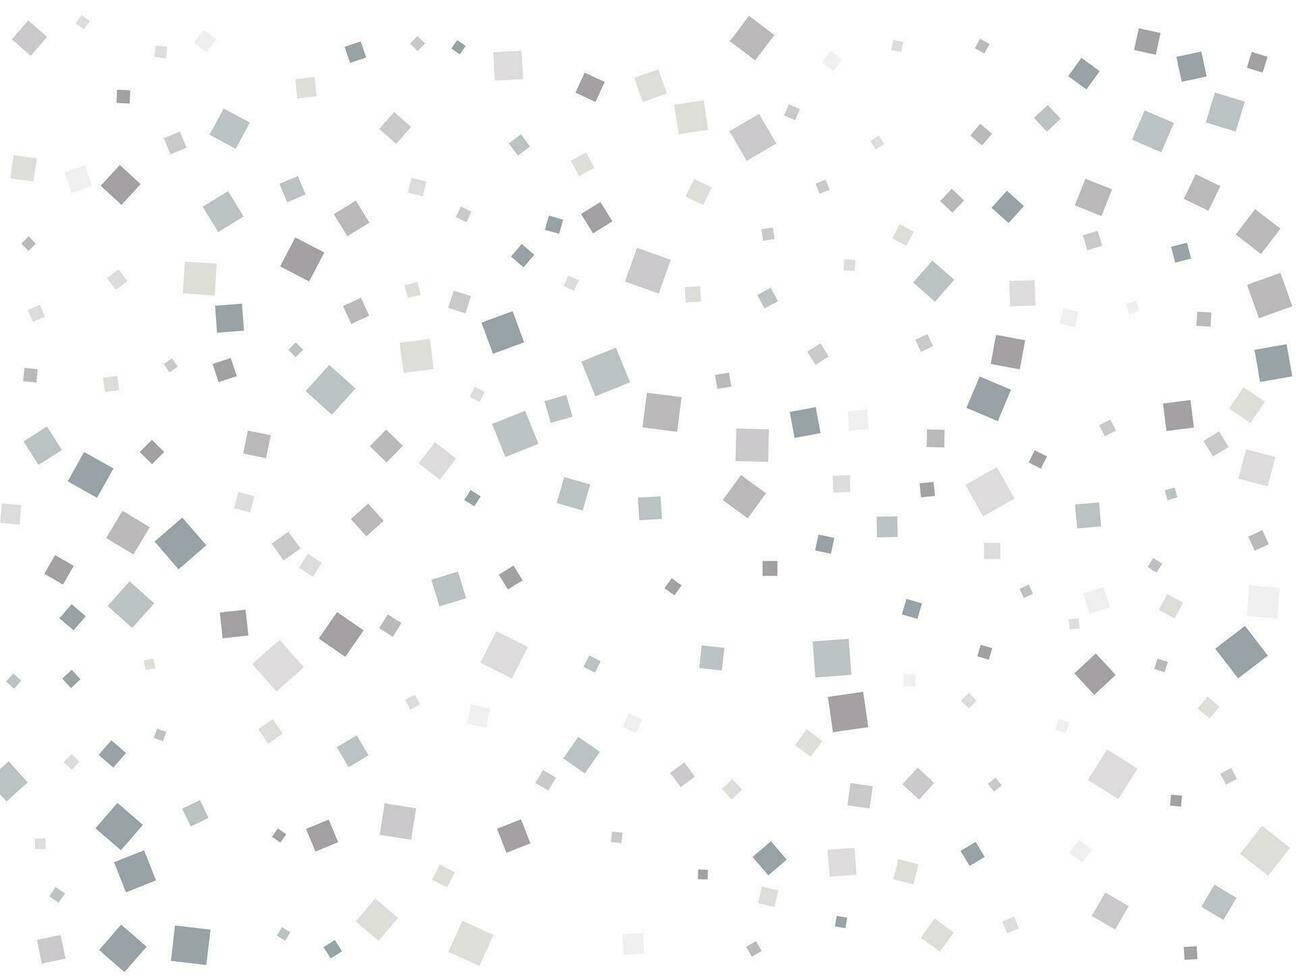 Silver square confetti. Vector illustration.